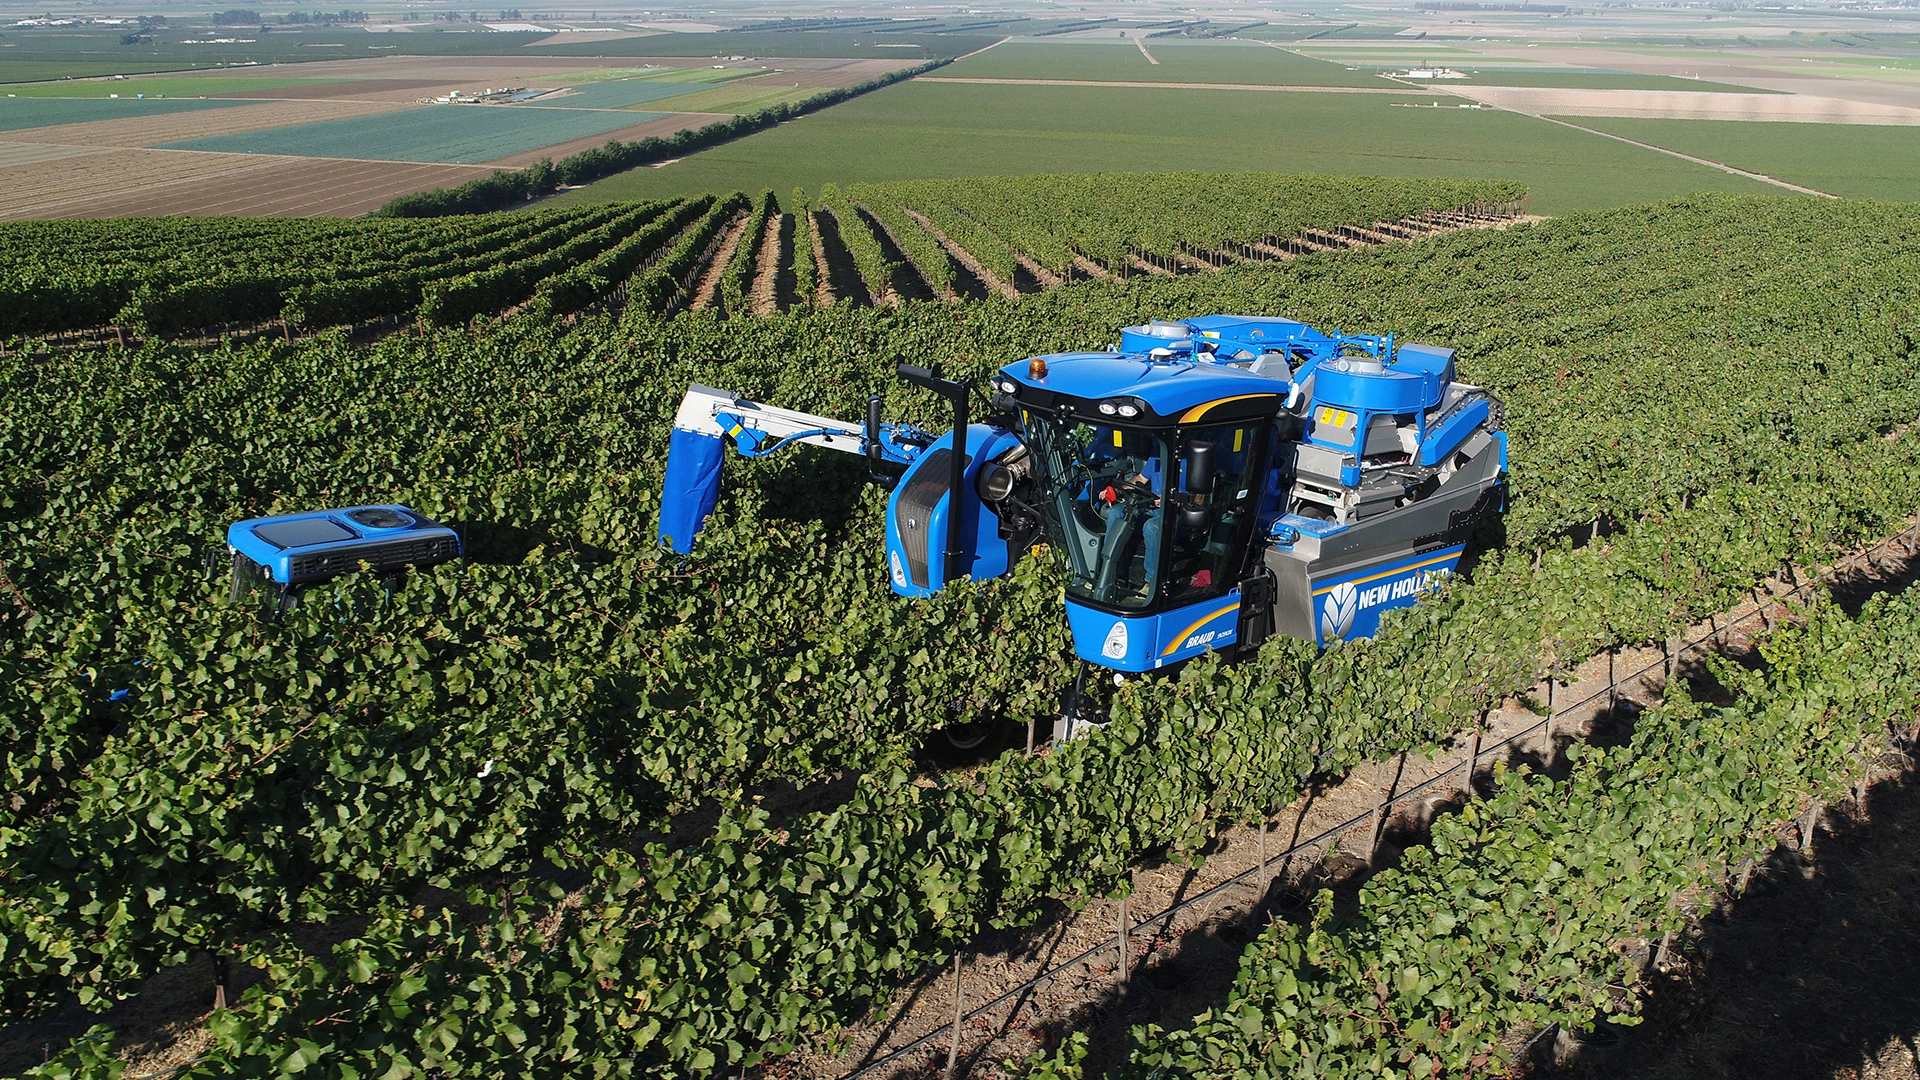 Braud 9090x Grape Harvesting machinery on the wineyard